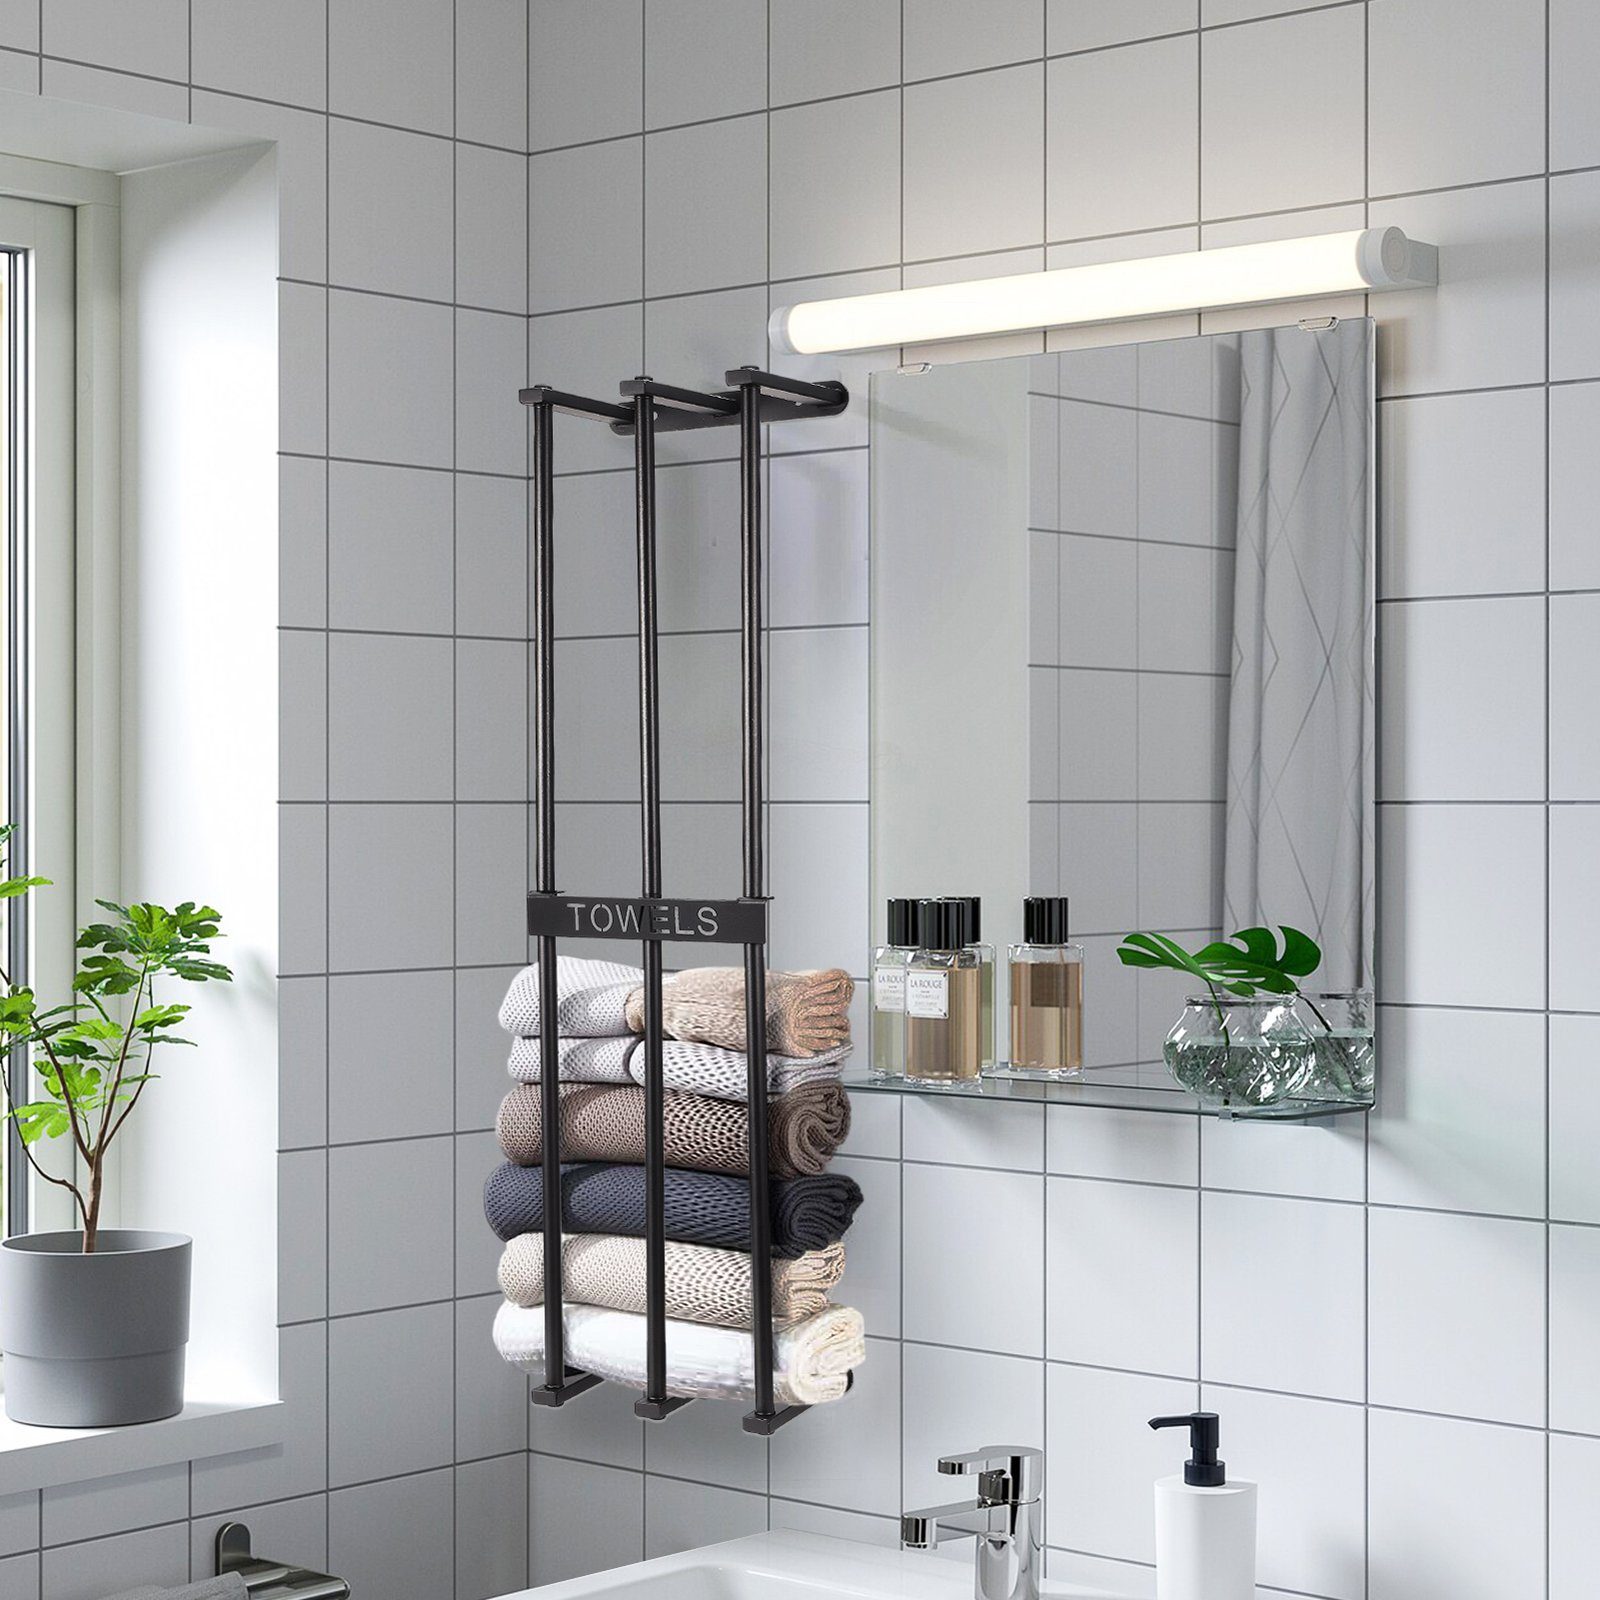 Badezimmer&Hotel, Roll Handtuchhalter zum SEEZSSA Falten Wand Metall-Badetuchhalter großer Handtuch Handtuchhalter für Handtuchlappen Wandmontierter